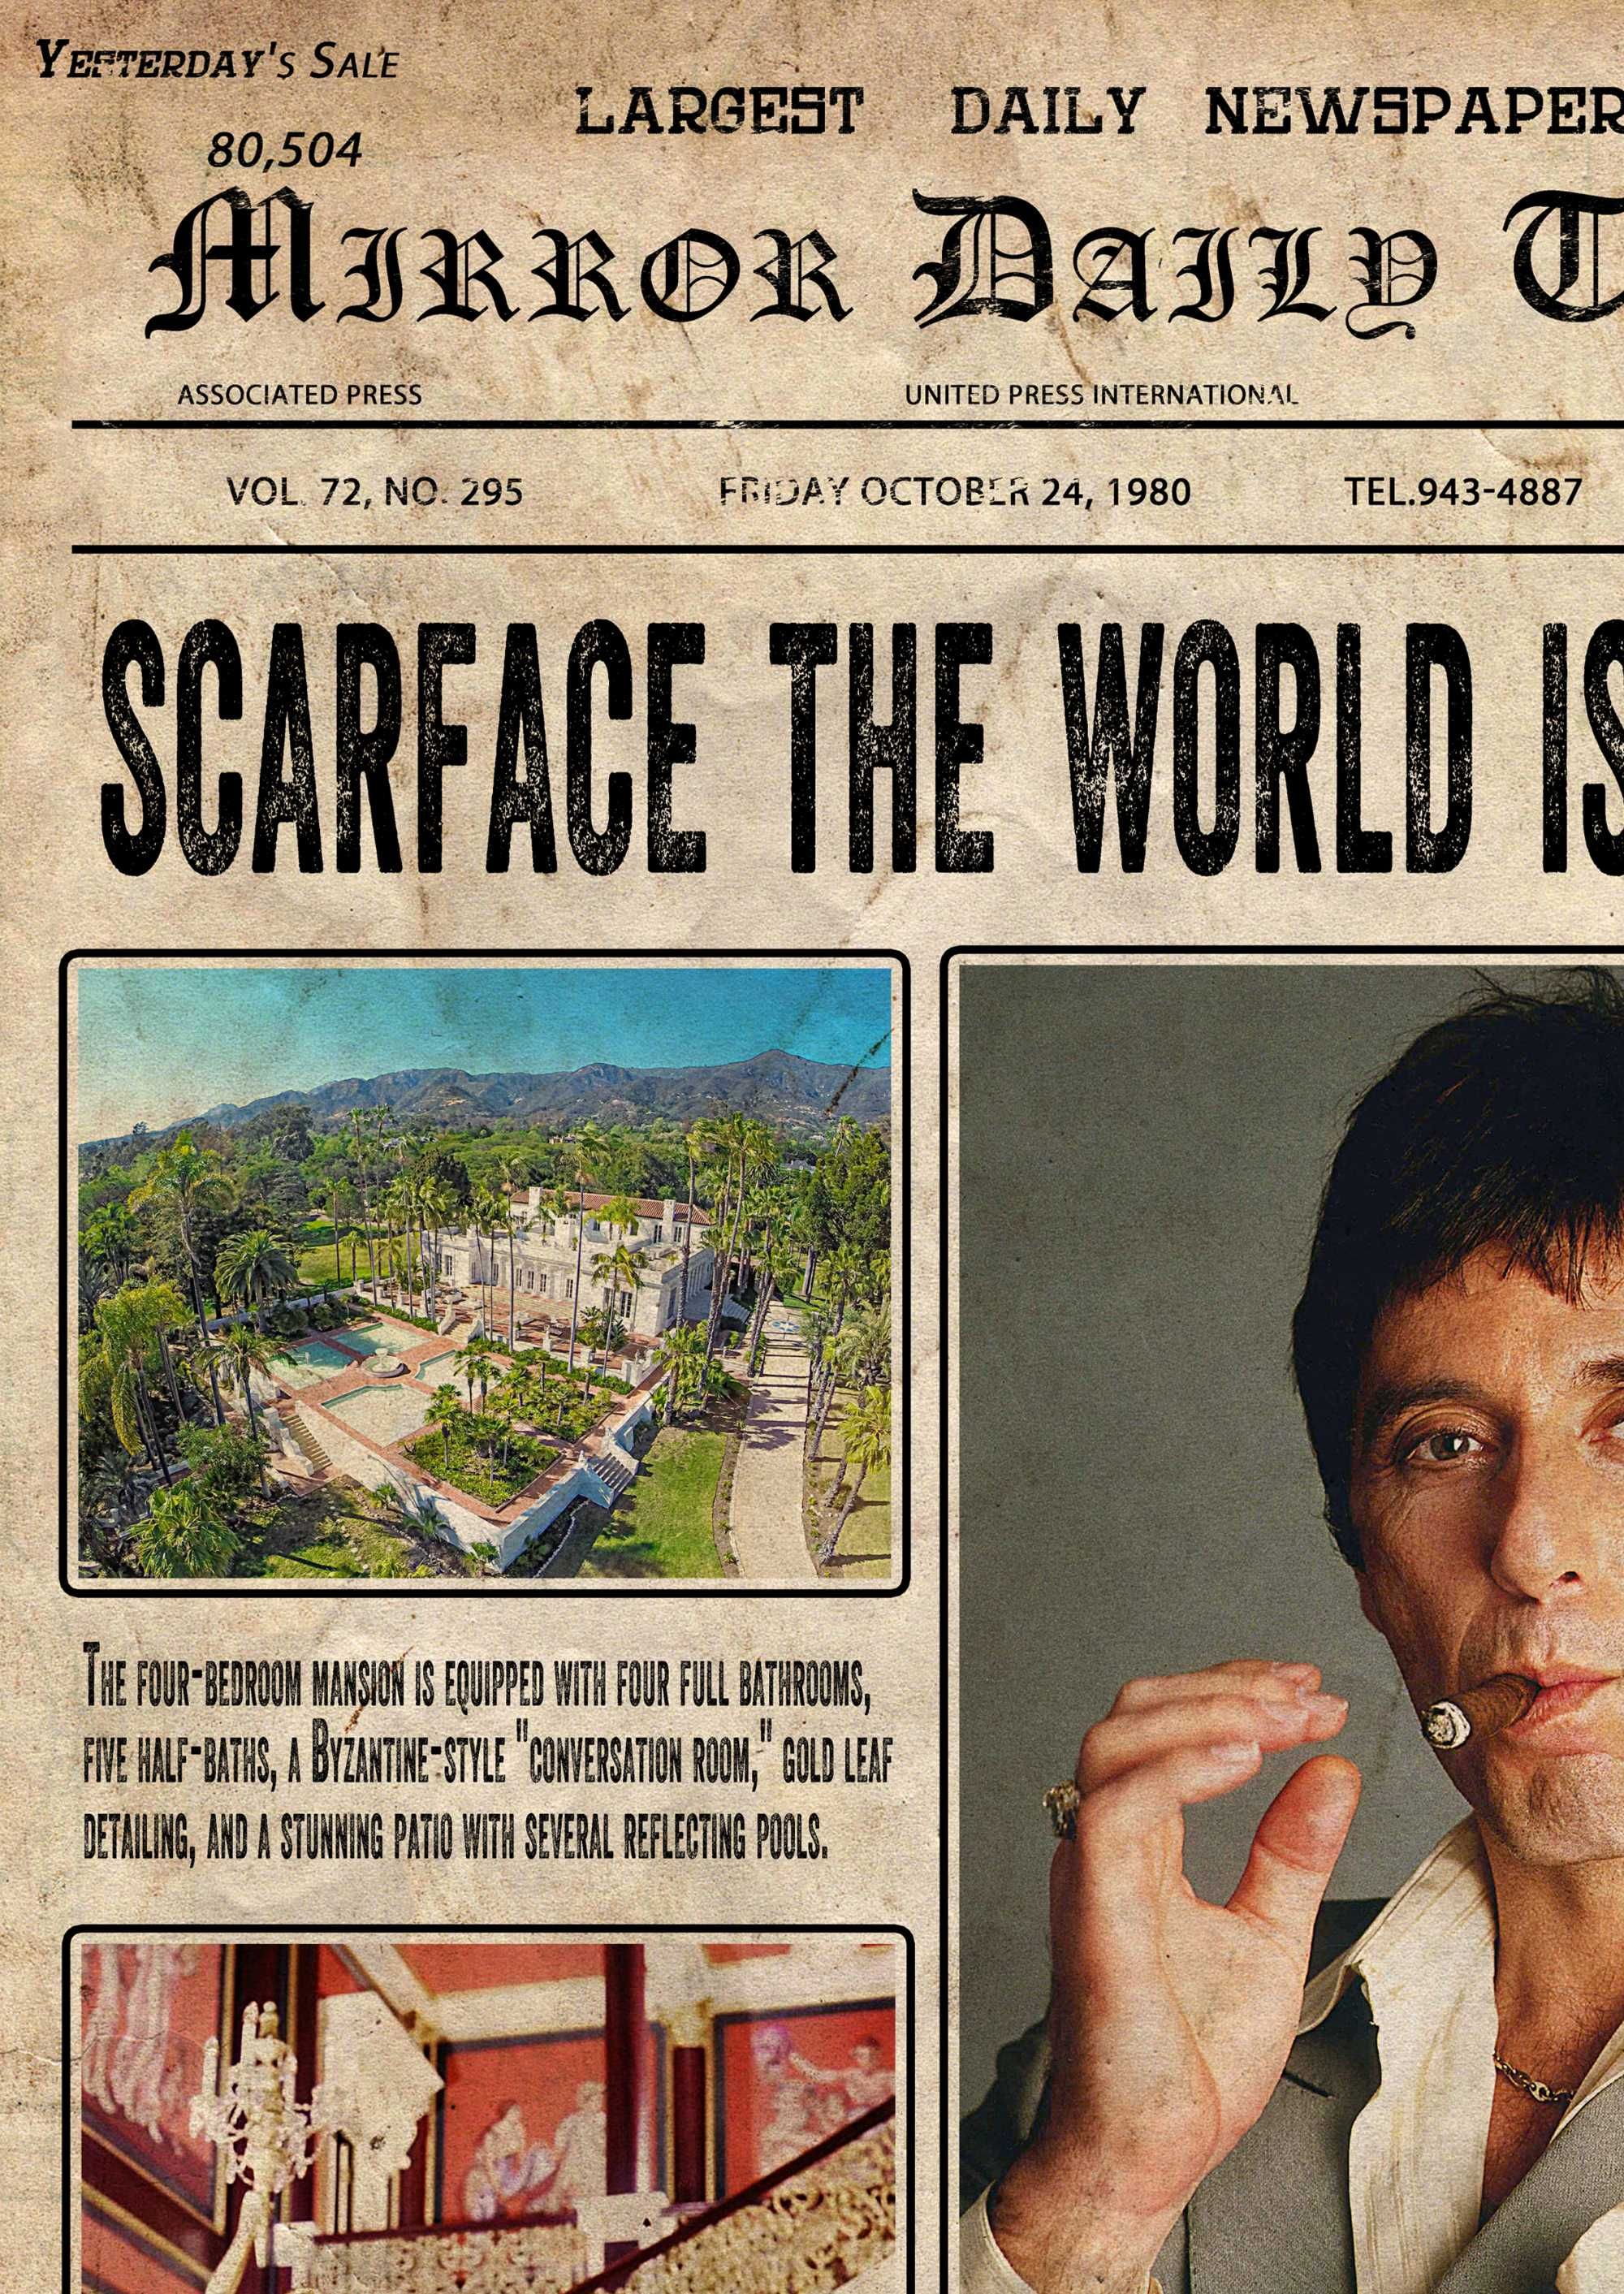 Белязаният вестник постер плакат Тони Монтана Scarface